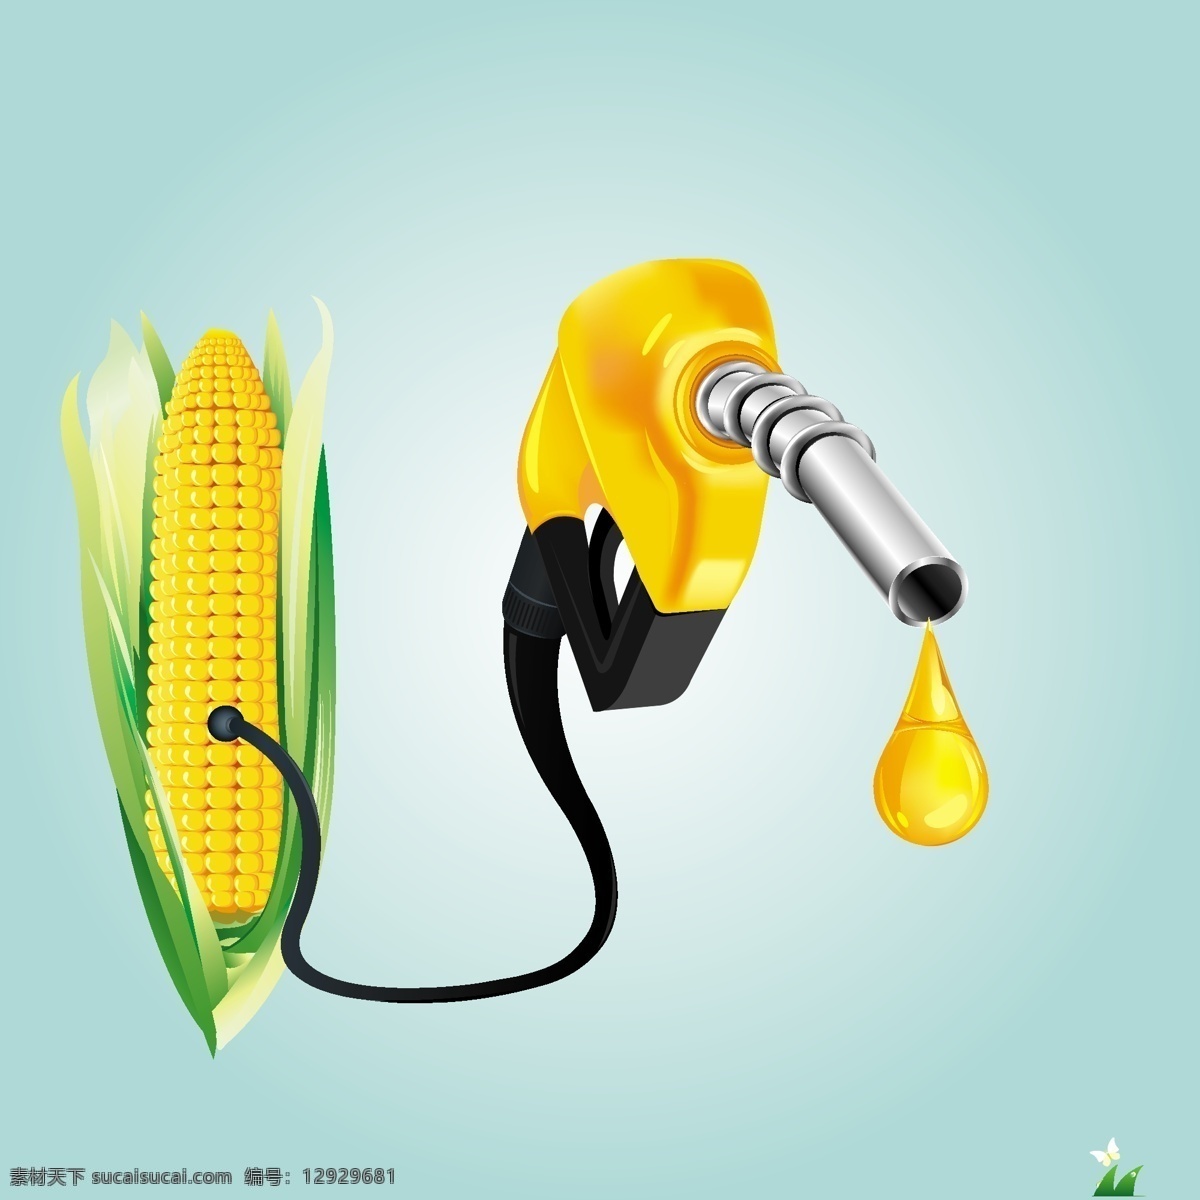 玉米与油 金黄的玉米 食物 食用油 生活食品图片 标志图标 矢量素材 黄色